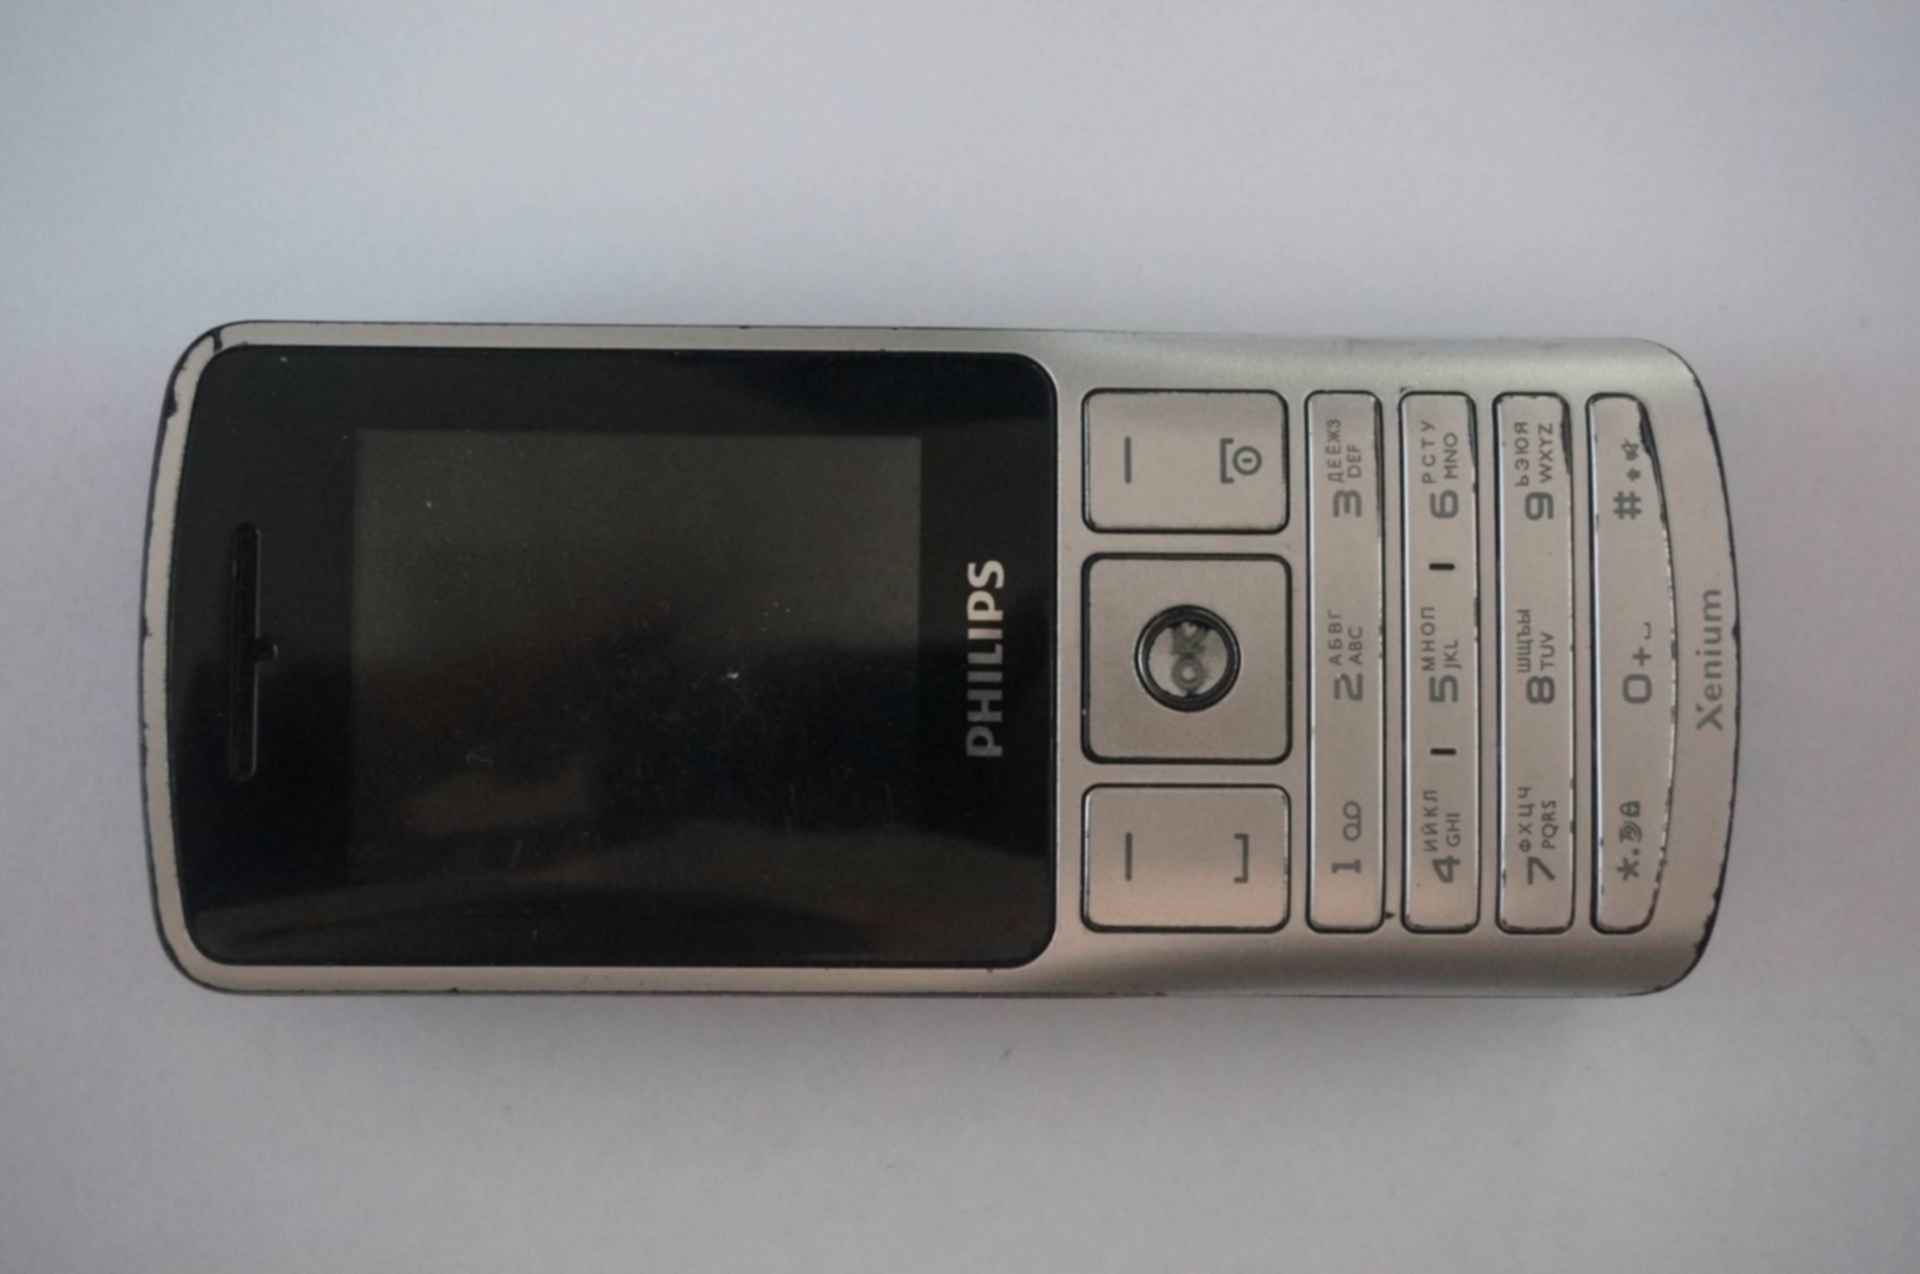 Мелодии филипс кнопочный. Телефон Philips k700. Телефон Филипс кнопочный старые модели. Филипс телефон лягушка 2000 года. Телефон Филипс 2101 без задней крышки.